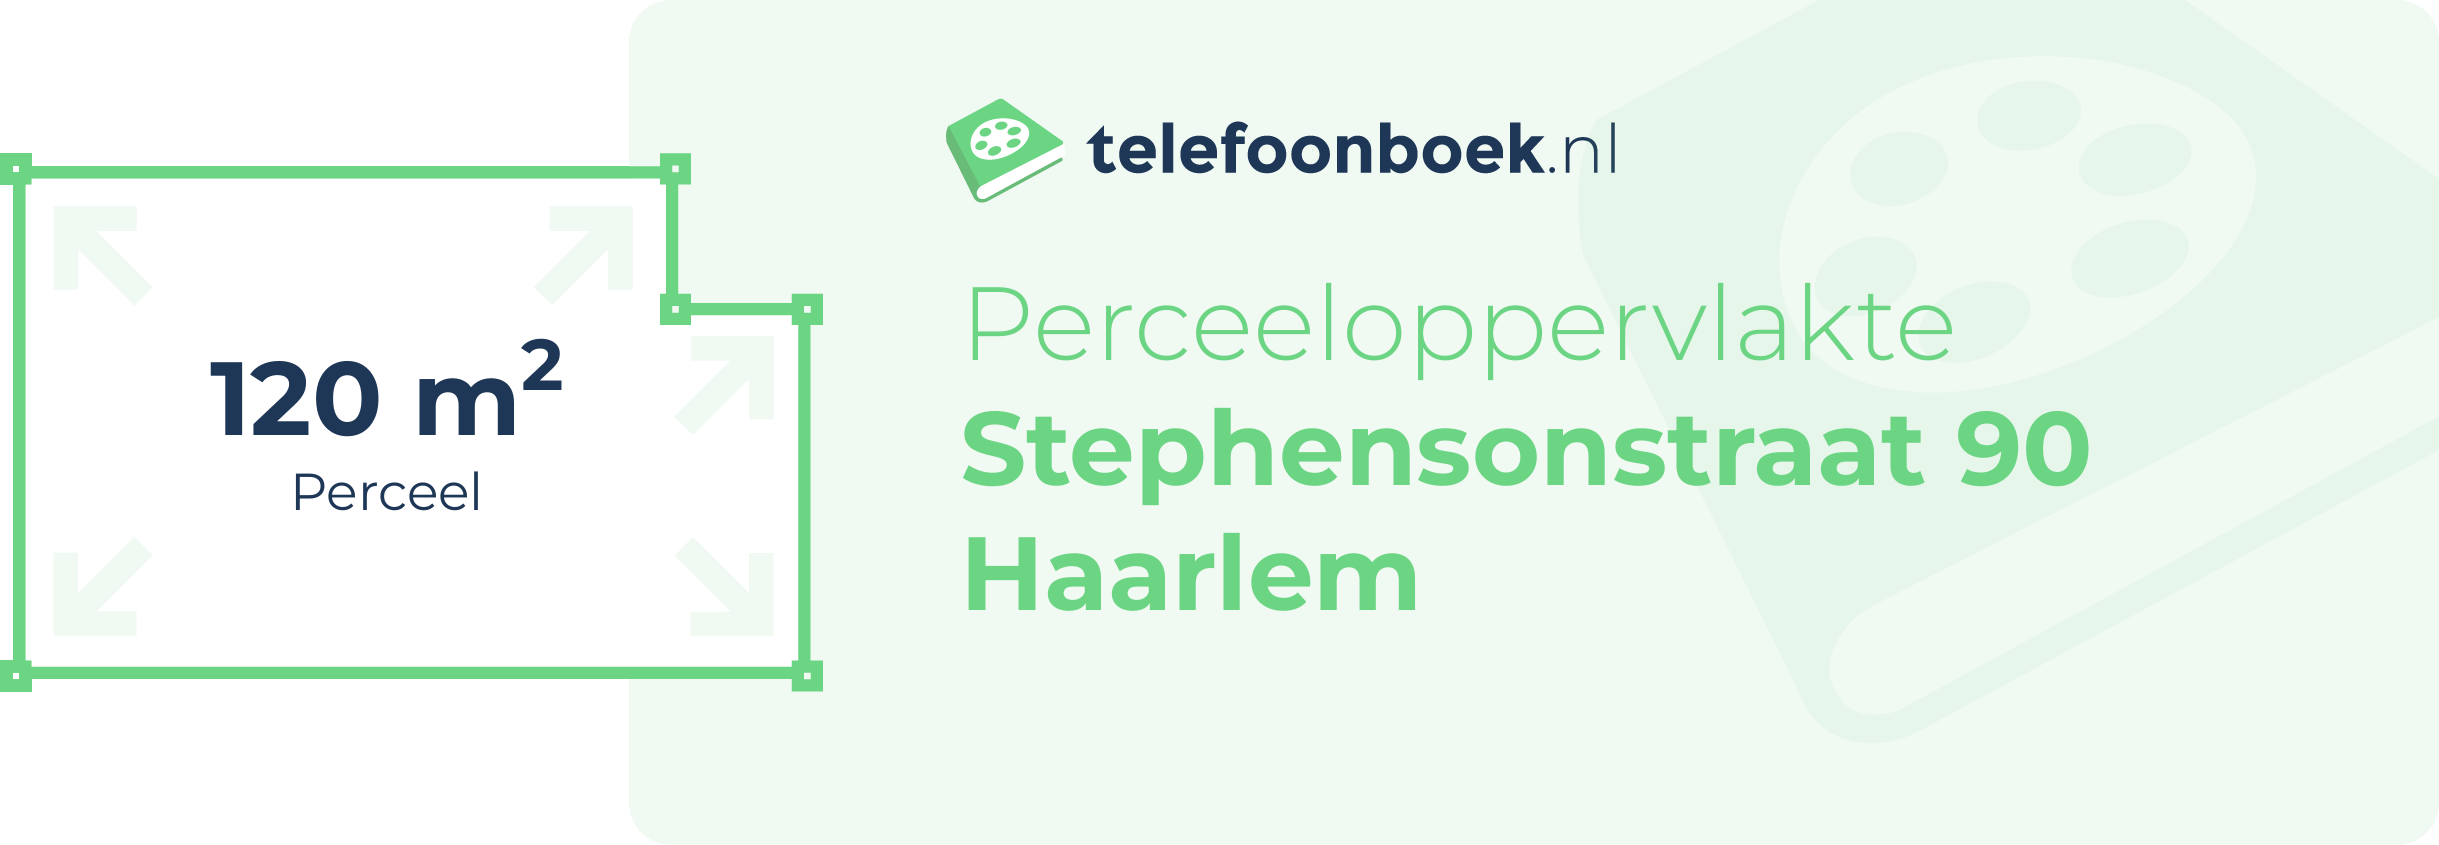 Perceeloppervlakte Stephensonstraat 90 Haarlem